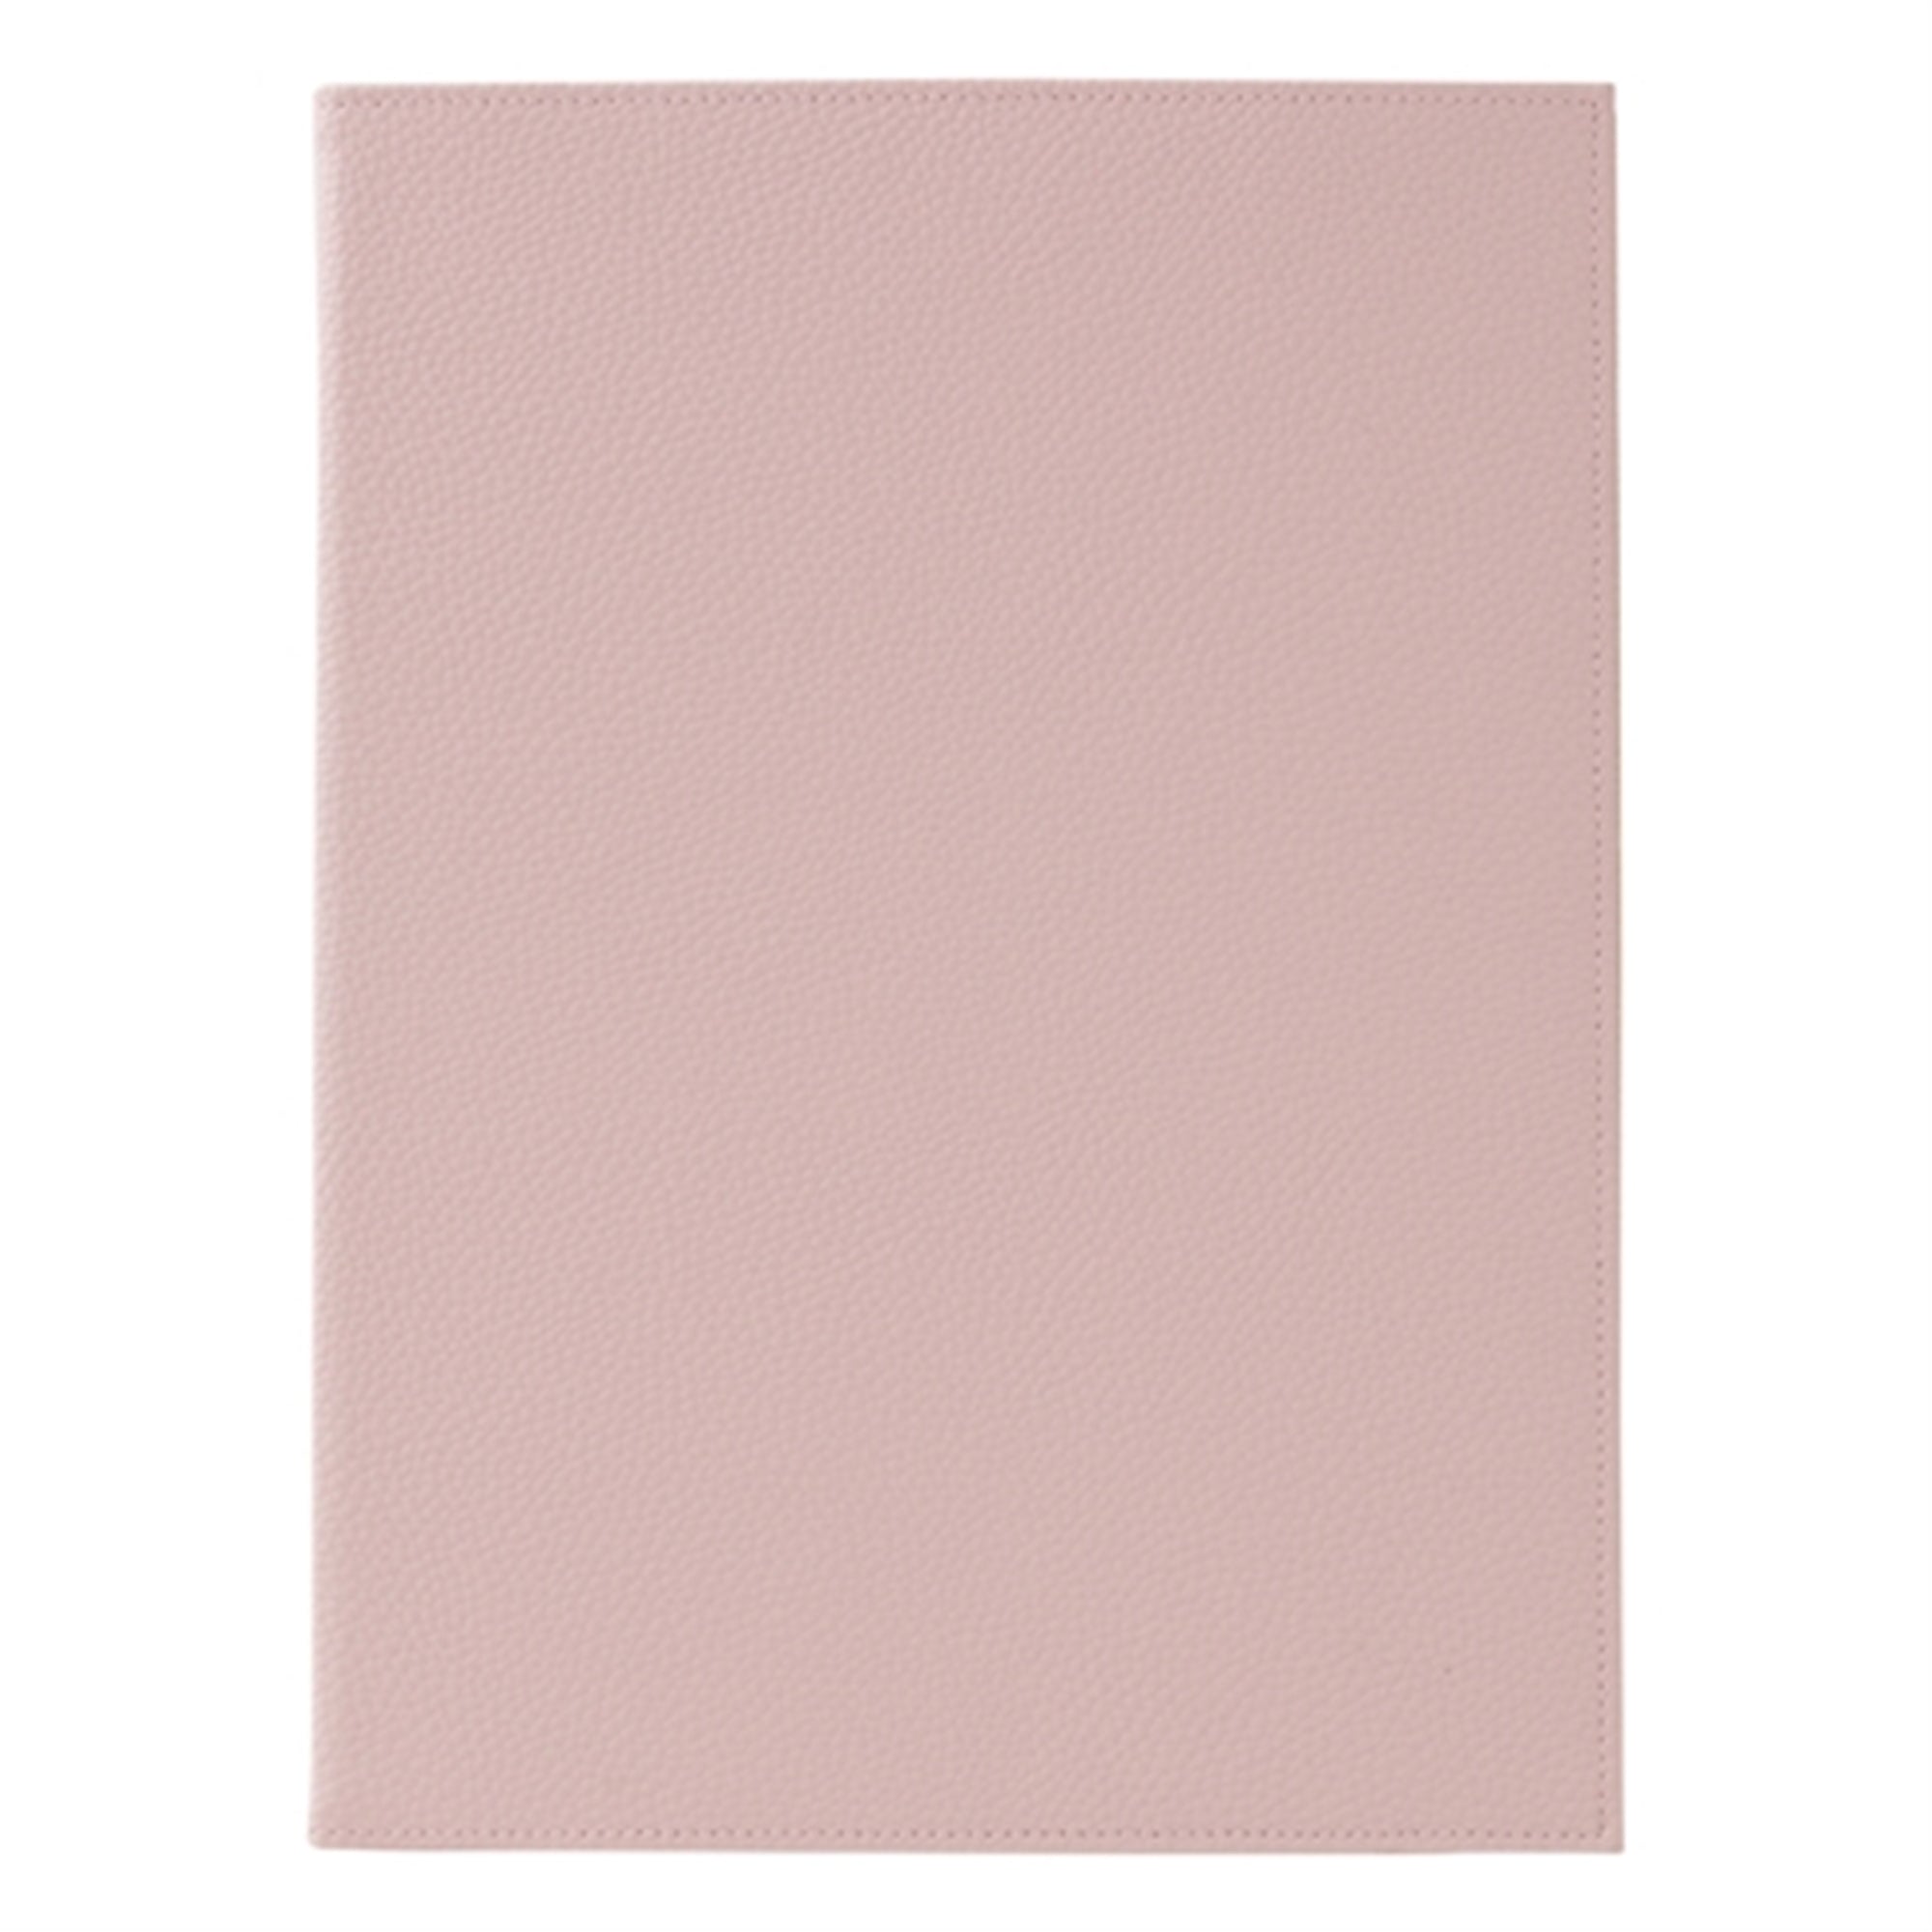 프랑프랑 일본 풀리레 뚜껑 바인더 핑크  